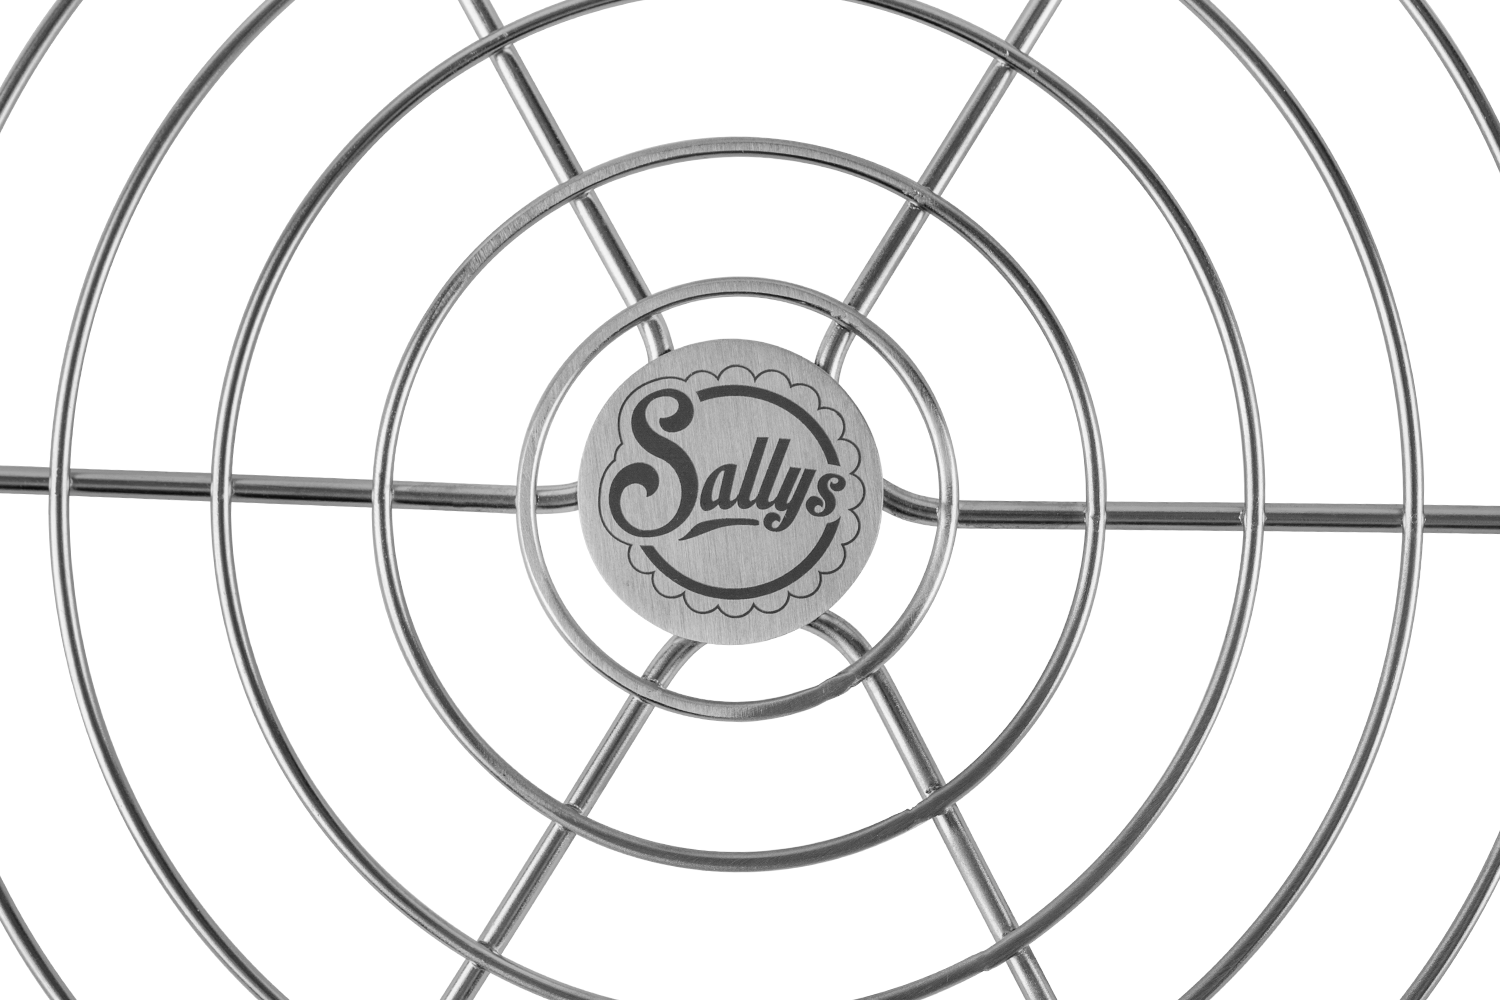 Nahaufnahme des Sallys Logos auf dem Abkühlgitter